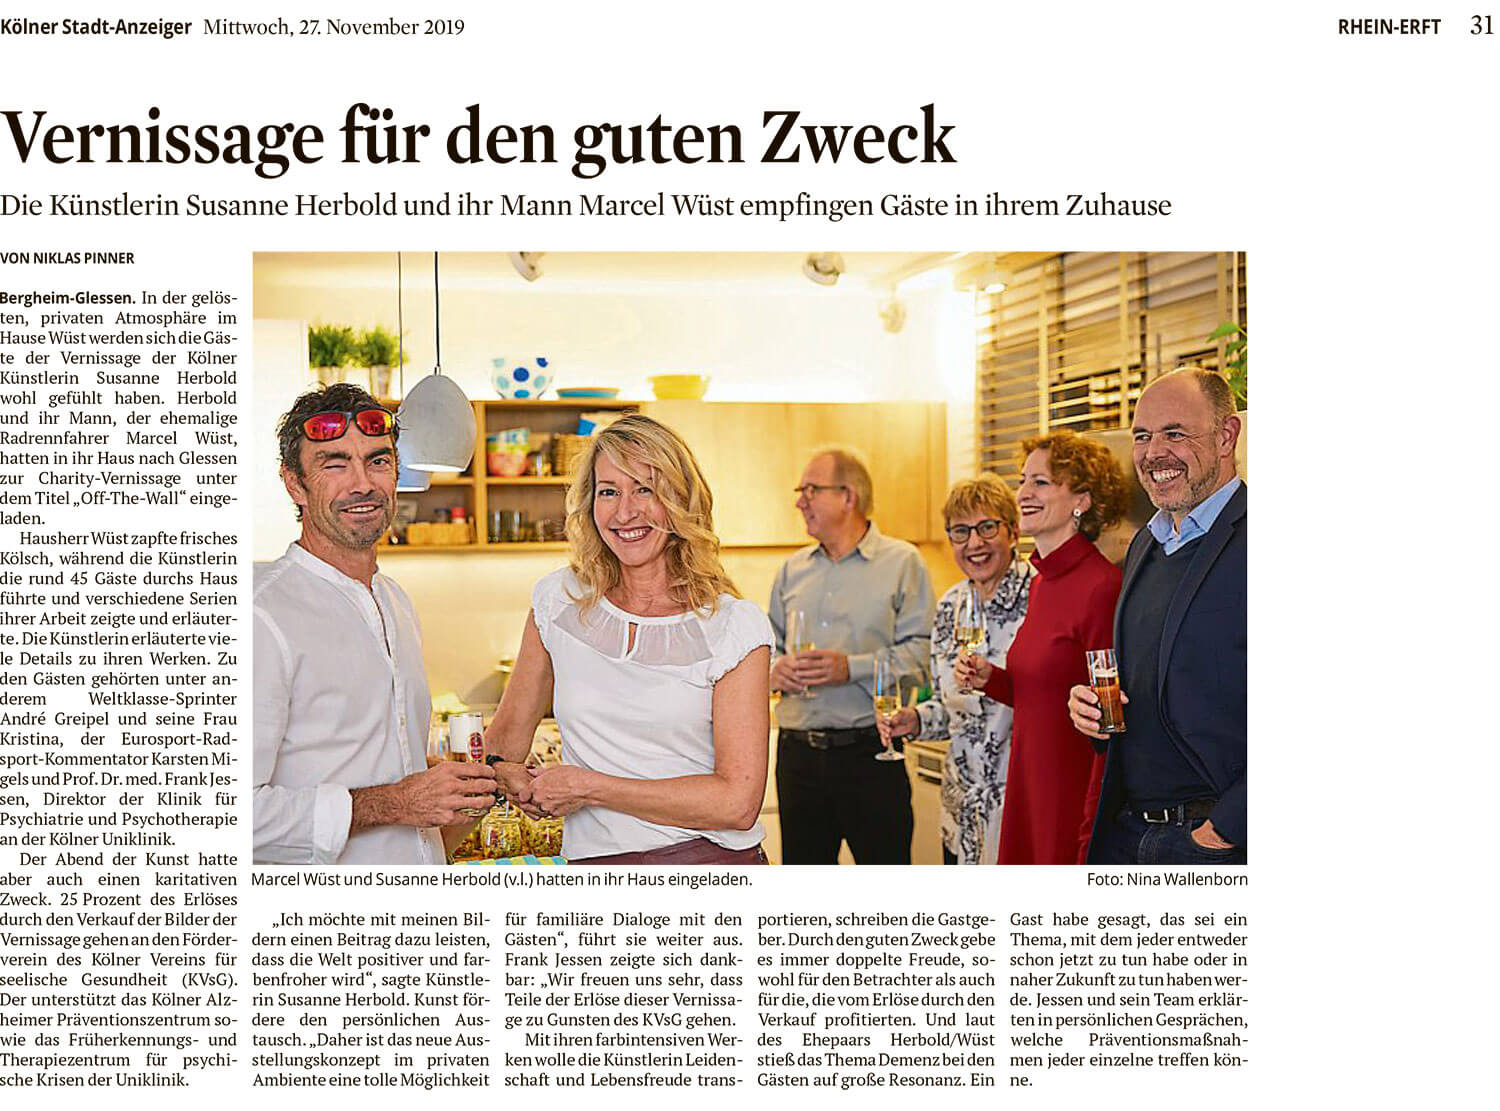 Zeitungsbericht "Vernissage für den guten Zweck" (Rhein-Erft Rundschau vom 27.11.2019)